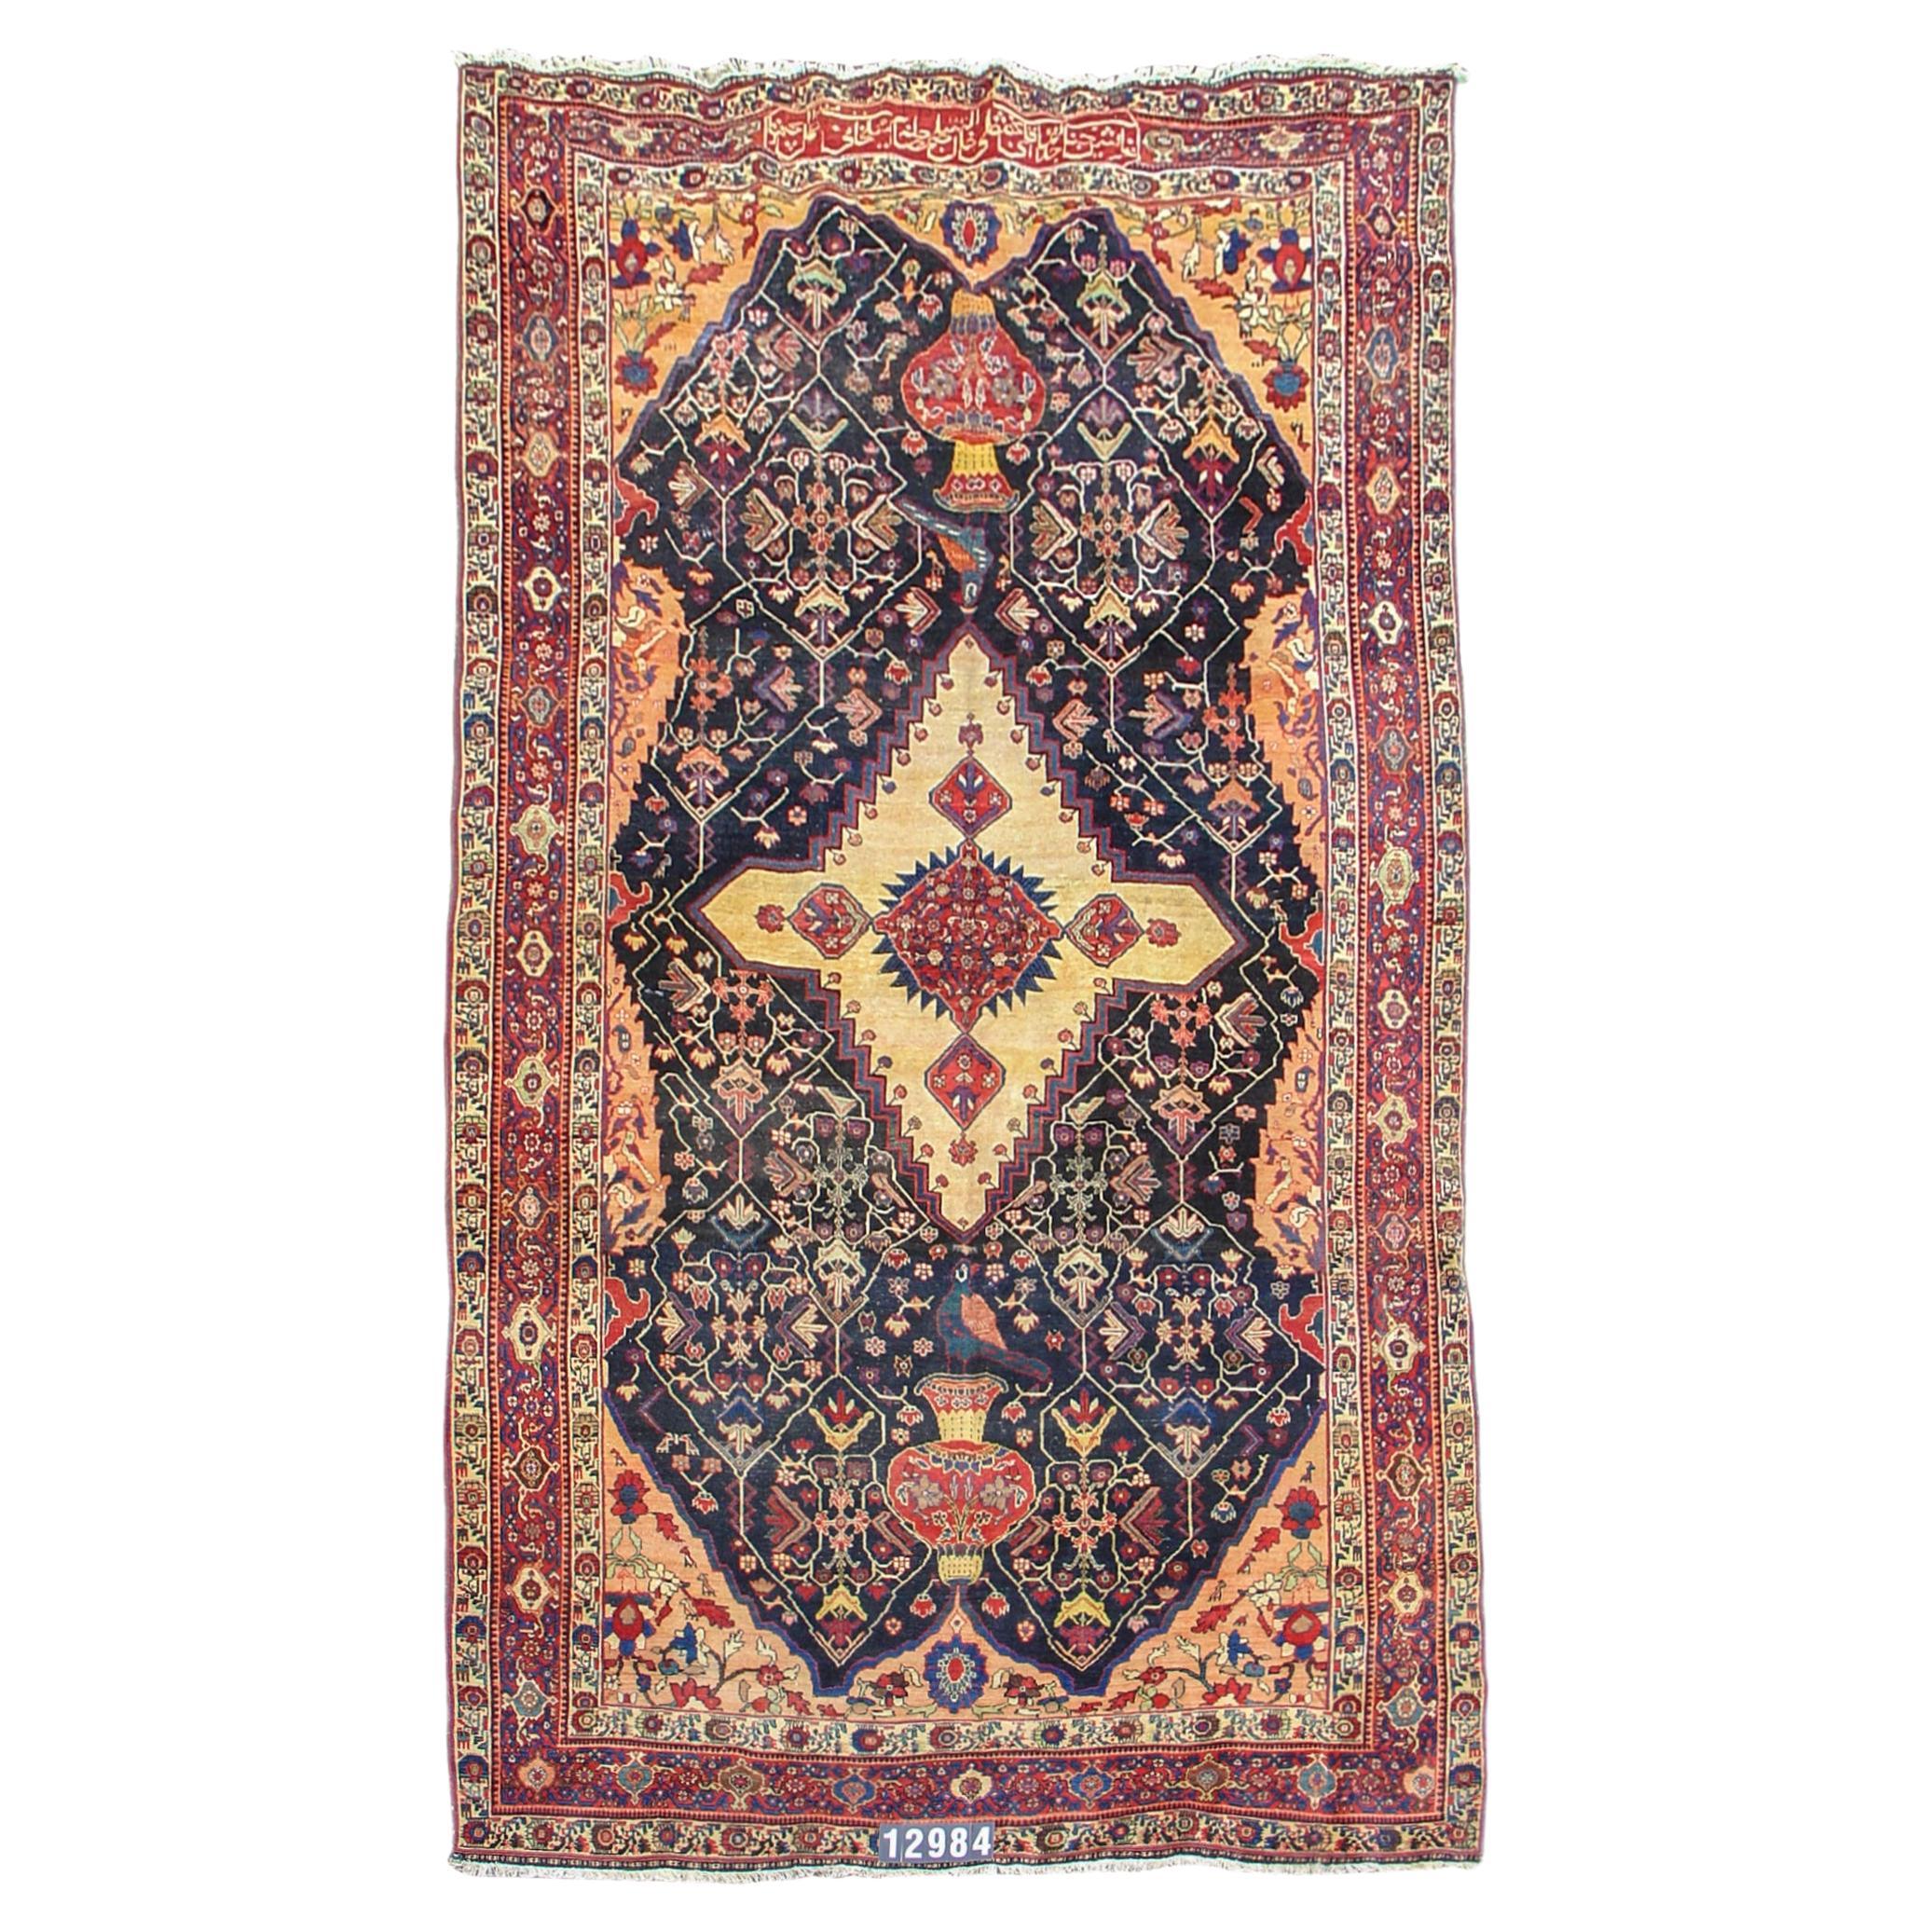 Antiker persischer Bachtiari-Teppich, frühes 20. Jahrhundert